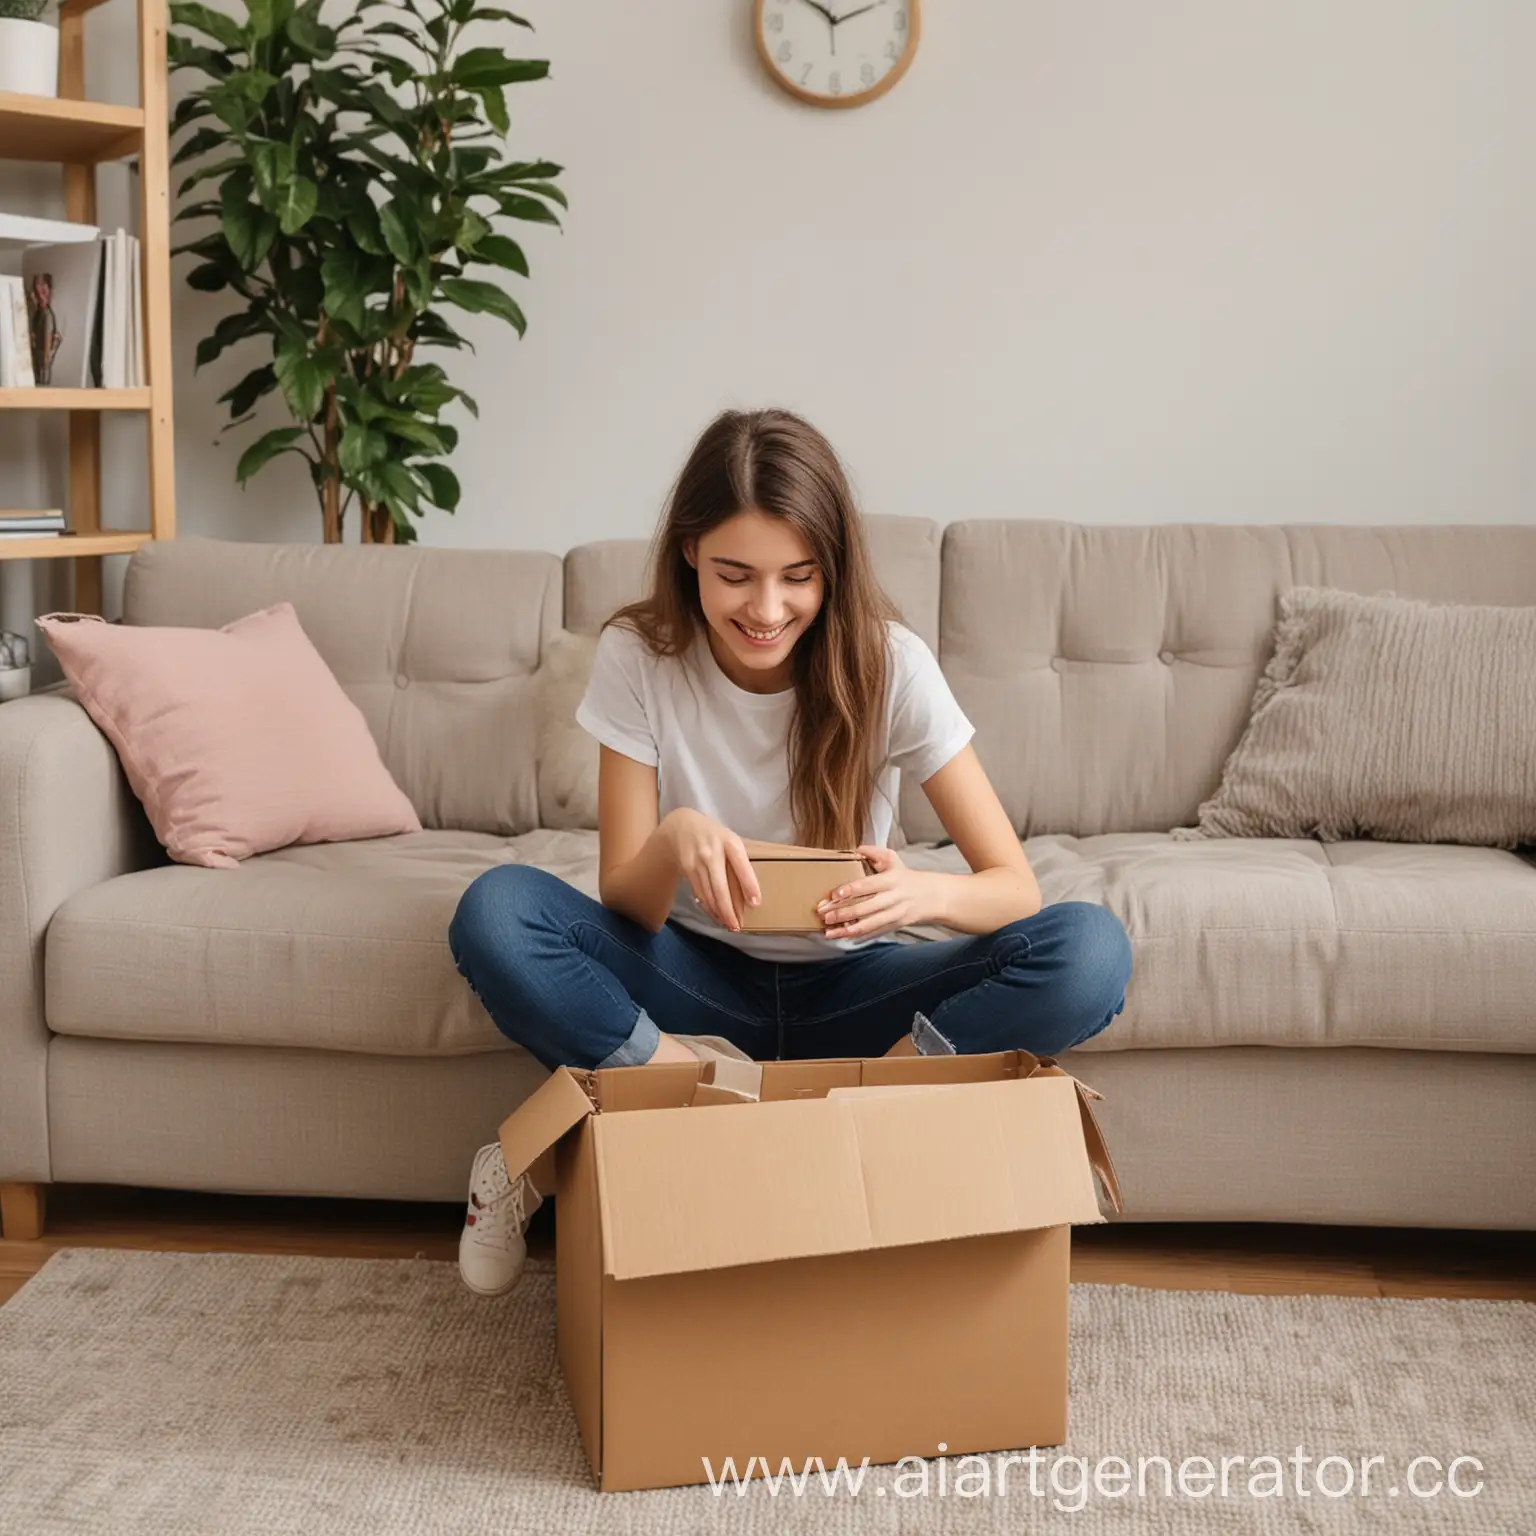 улыбающаяся девушка сидит на диване в домашней обстановке и открывает коробку с товарами из доставки онлайн магазина